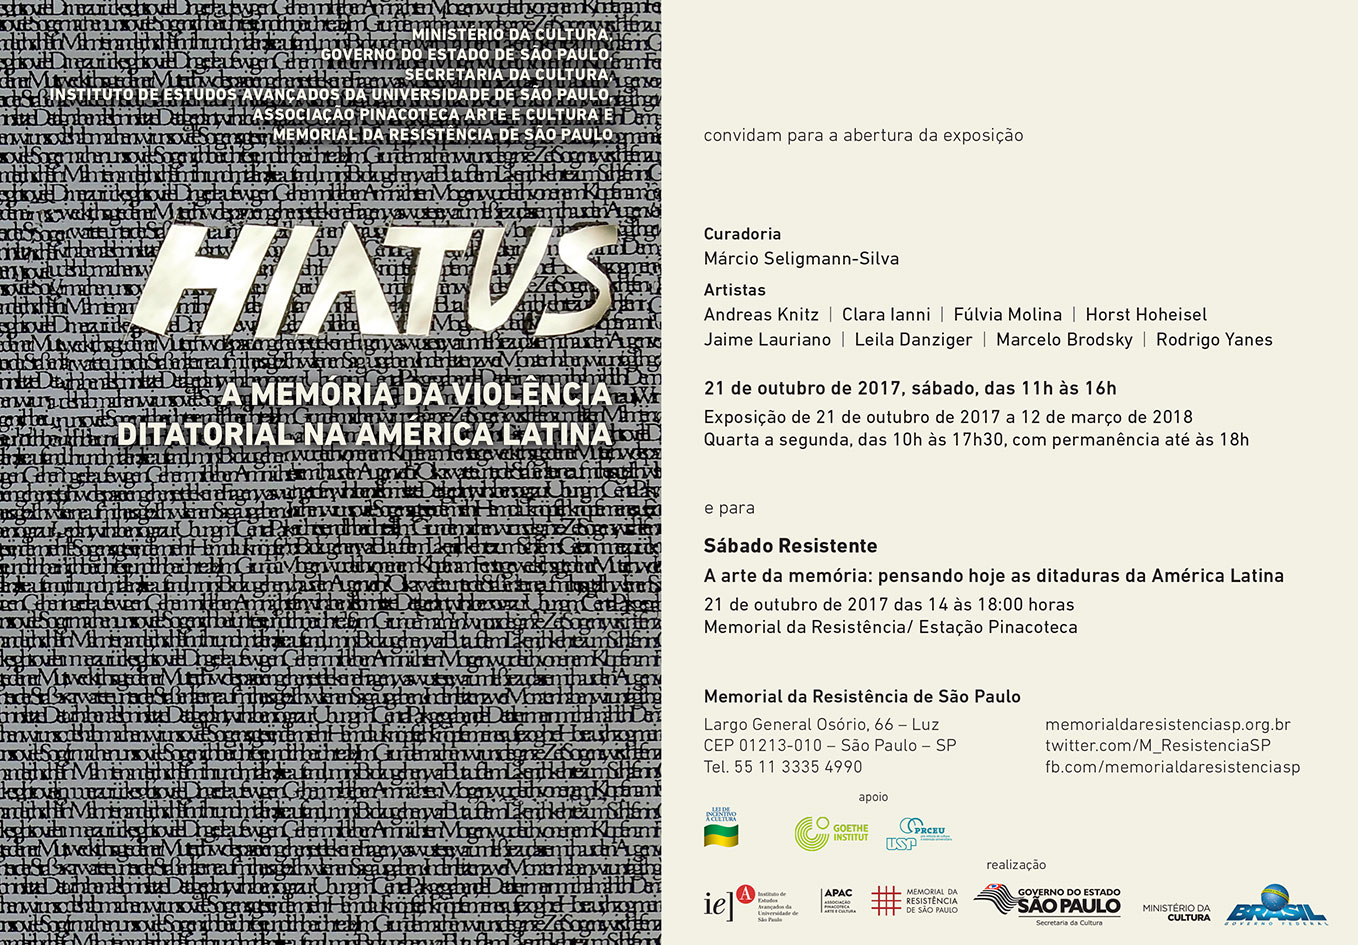 “Hiatus: a memória da violência ditatorial na América Latina. Registro III: Arte como memória do mal e espaço de ação (Parte I)”, Por Marcio Seligmann-Silva